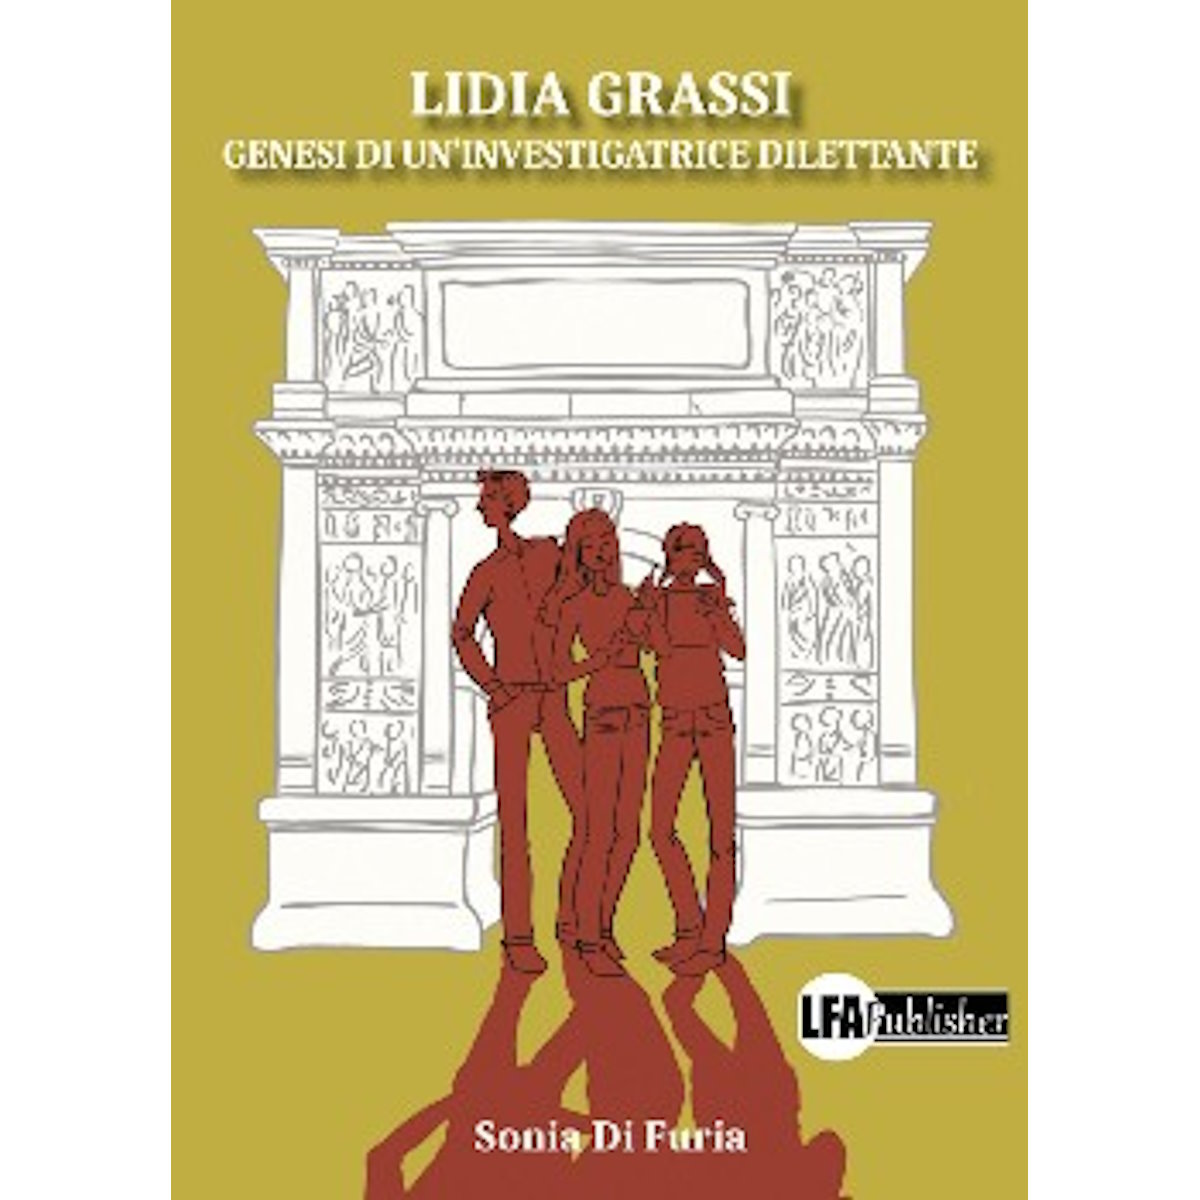 “Lidia Grassi, genesi di un’investigatrice dilettante”, la crime story innovativa di Sonia Di Furia